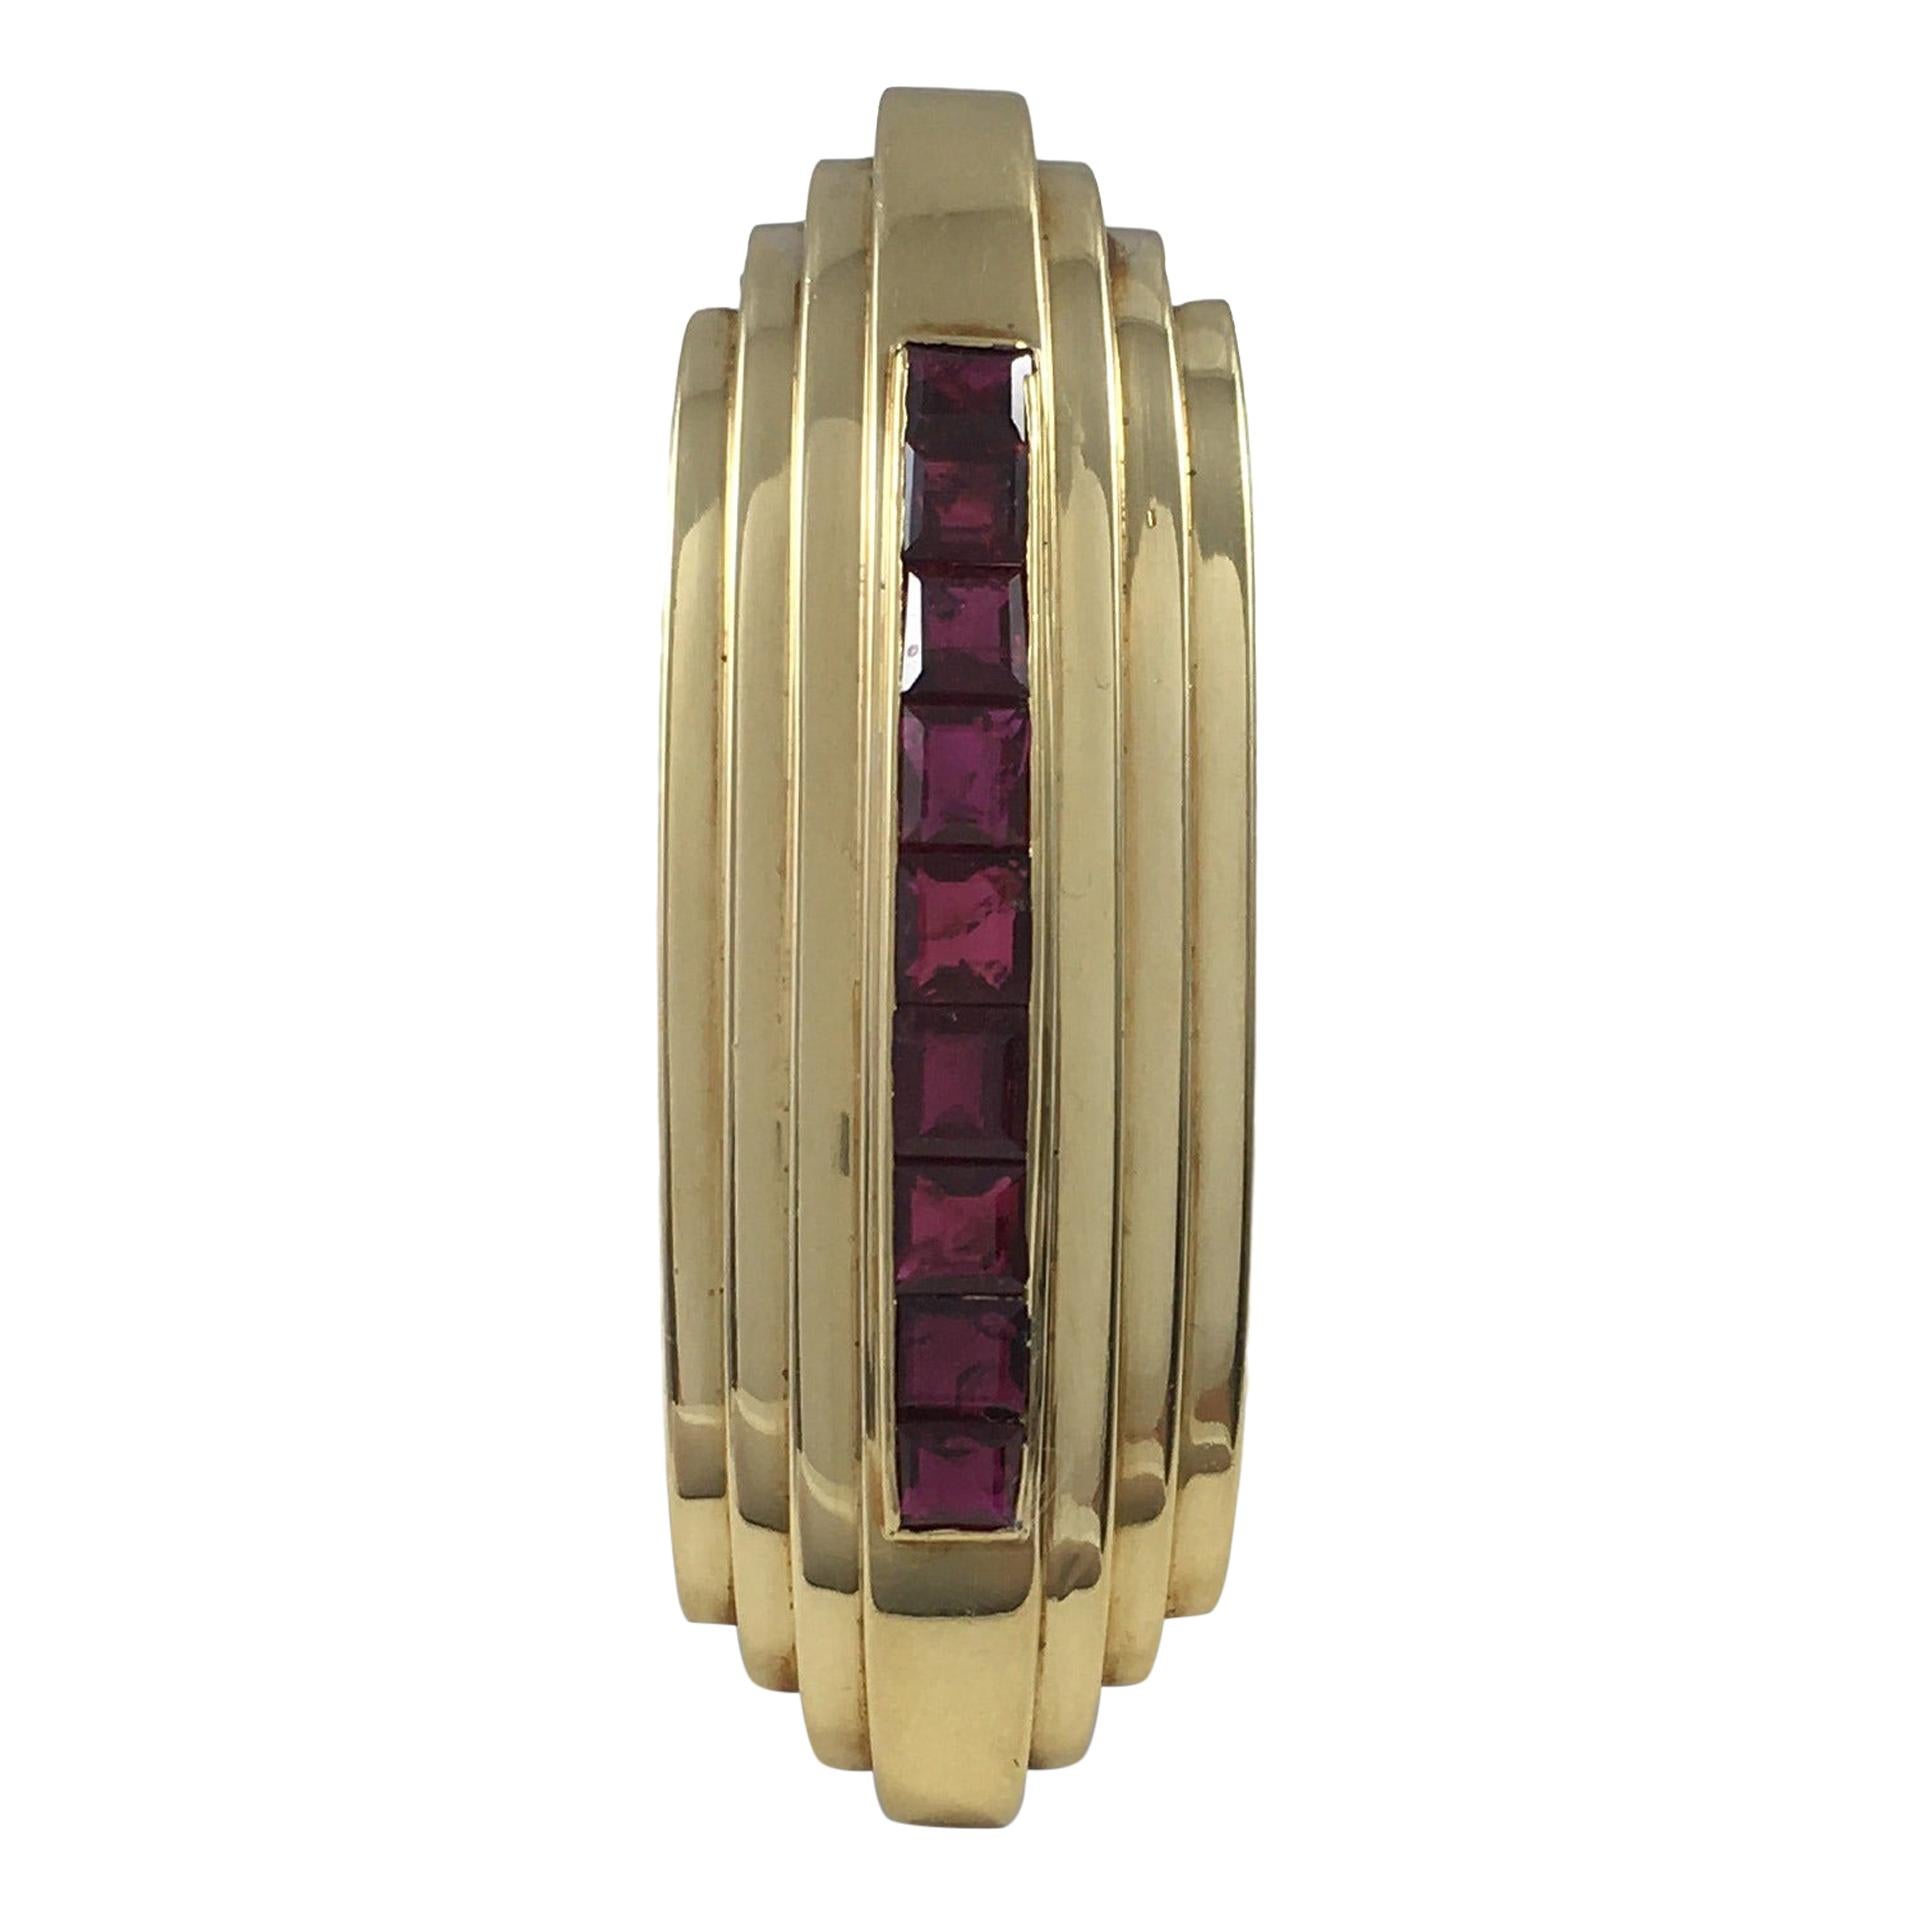 Art Deco French Burma Ruby Gold Clip Brooch